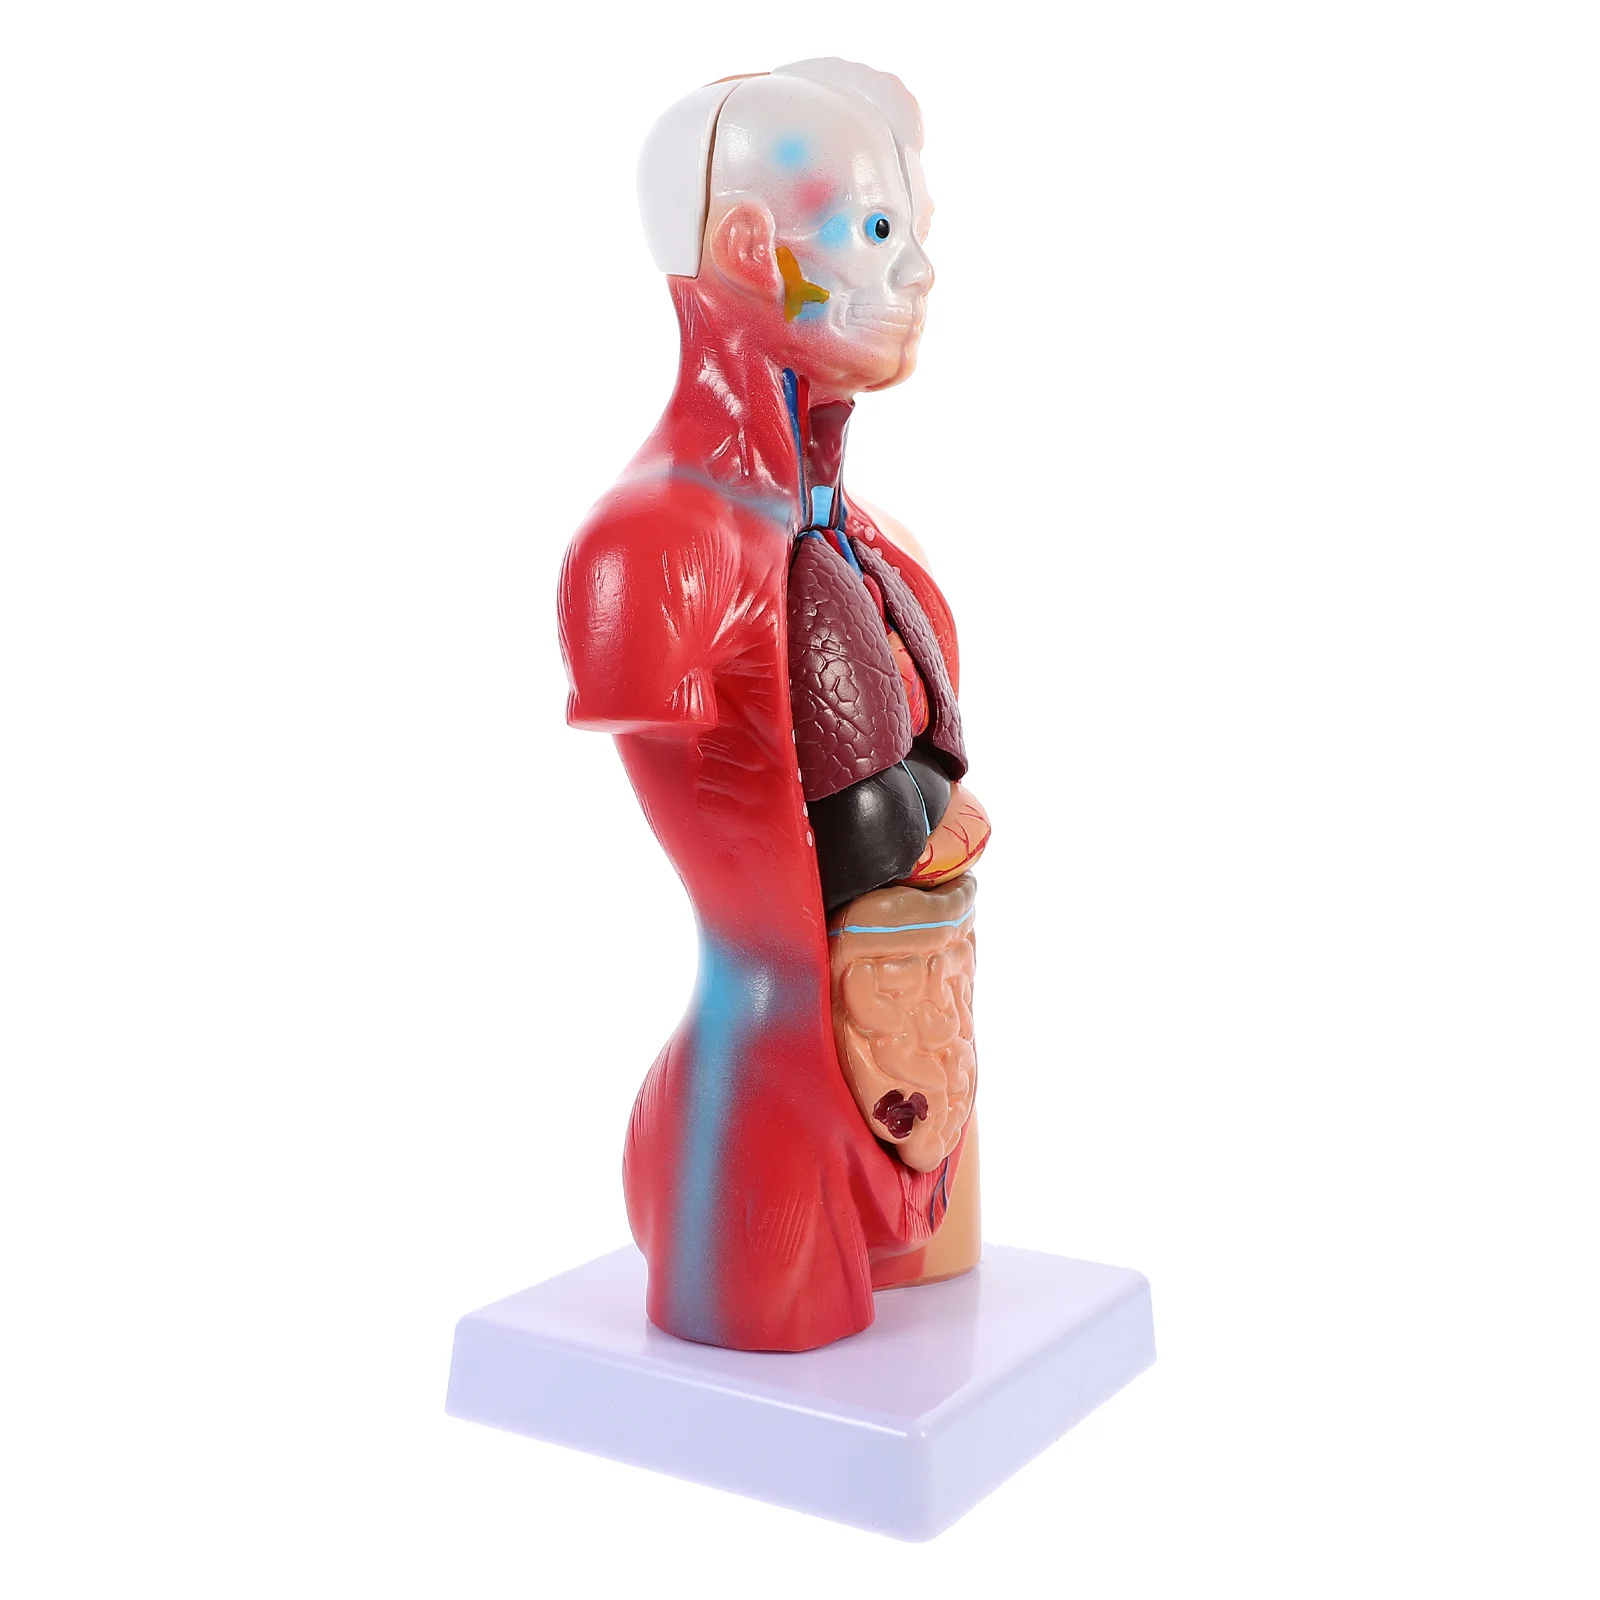 

Модель человеческого туловища, игрушечный набор, обучающая модель анатомических органов, школьный обучающий инструмент, Детский обучающий туловище для ухода за человеческим телом, анатомический туловище